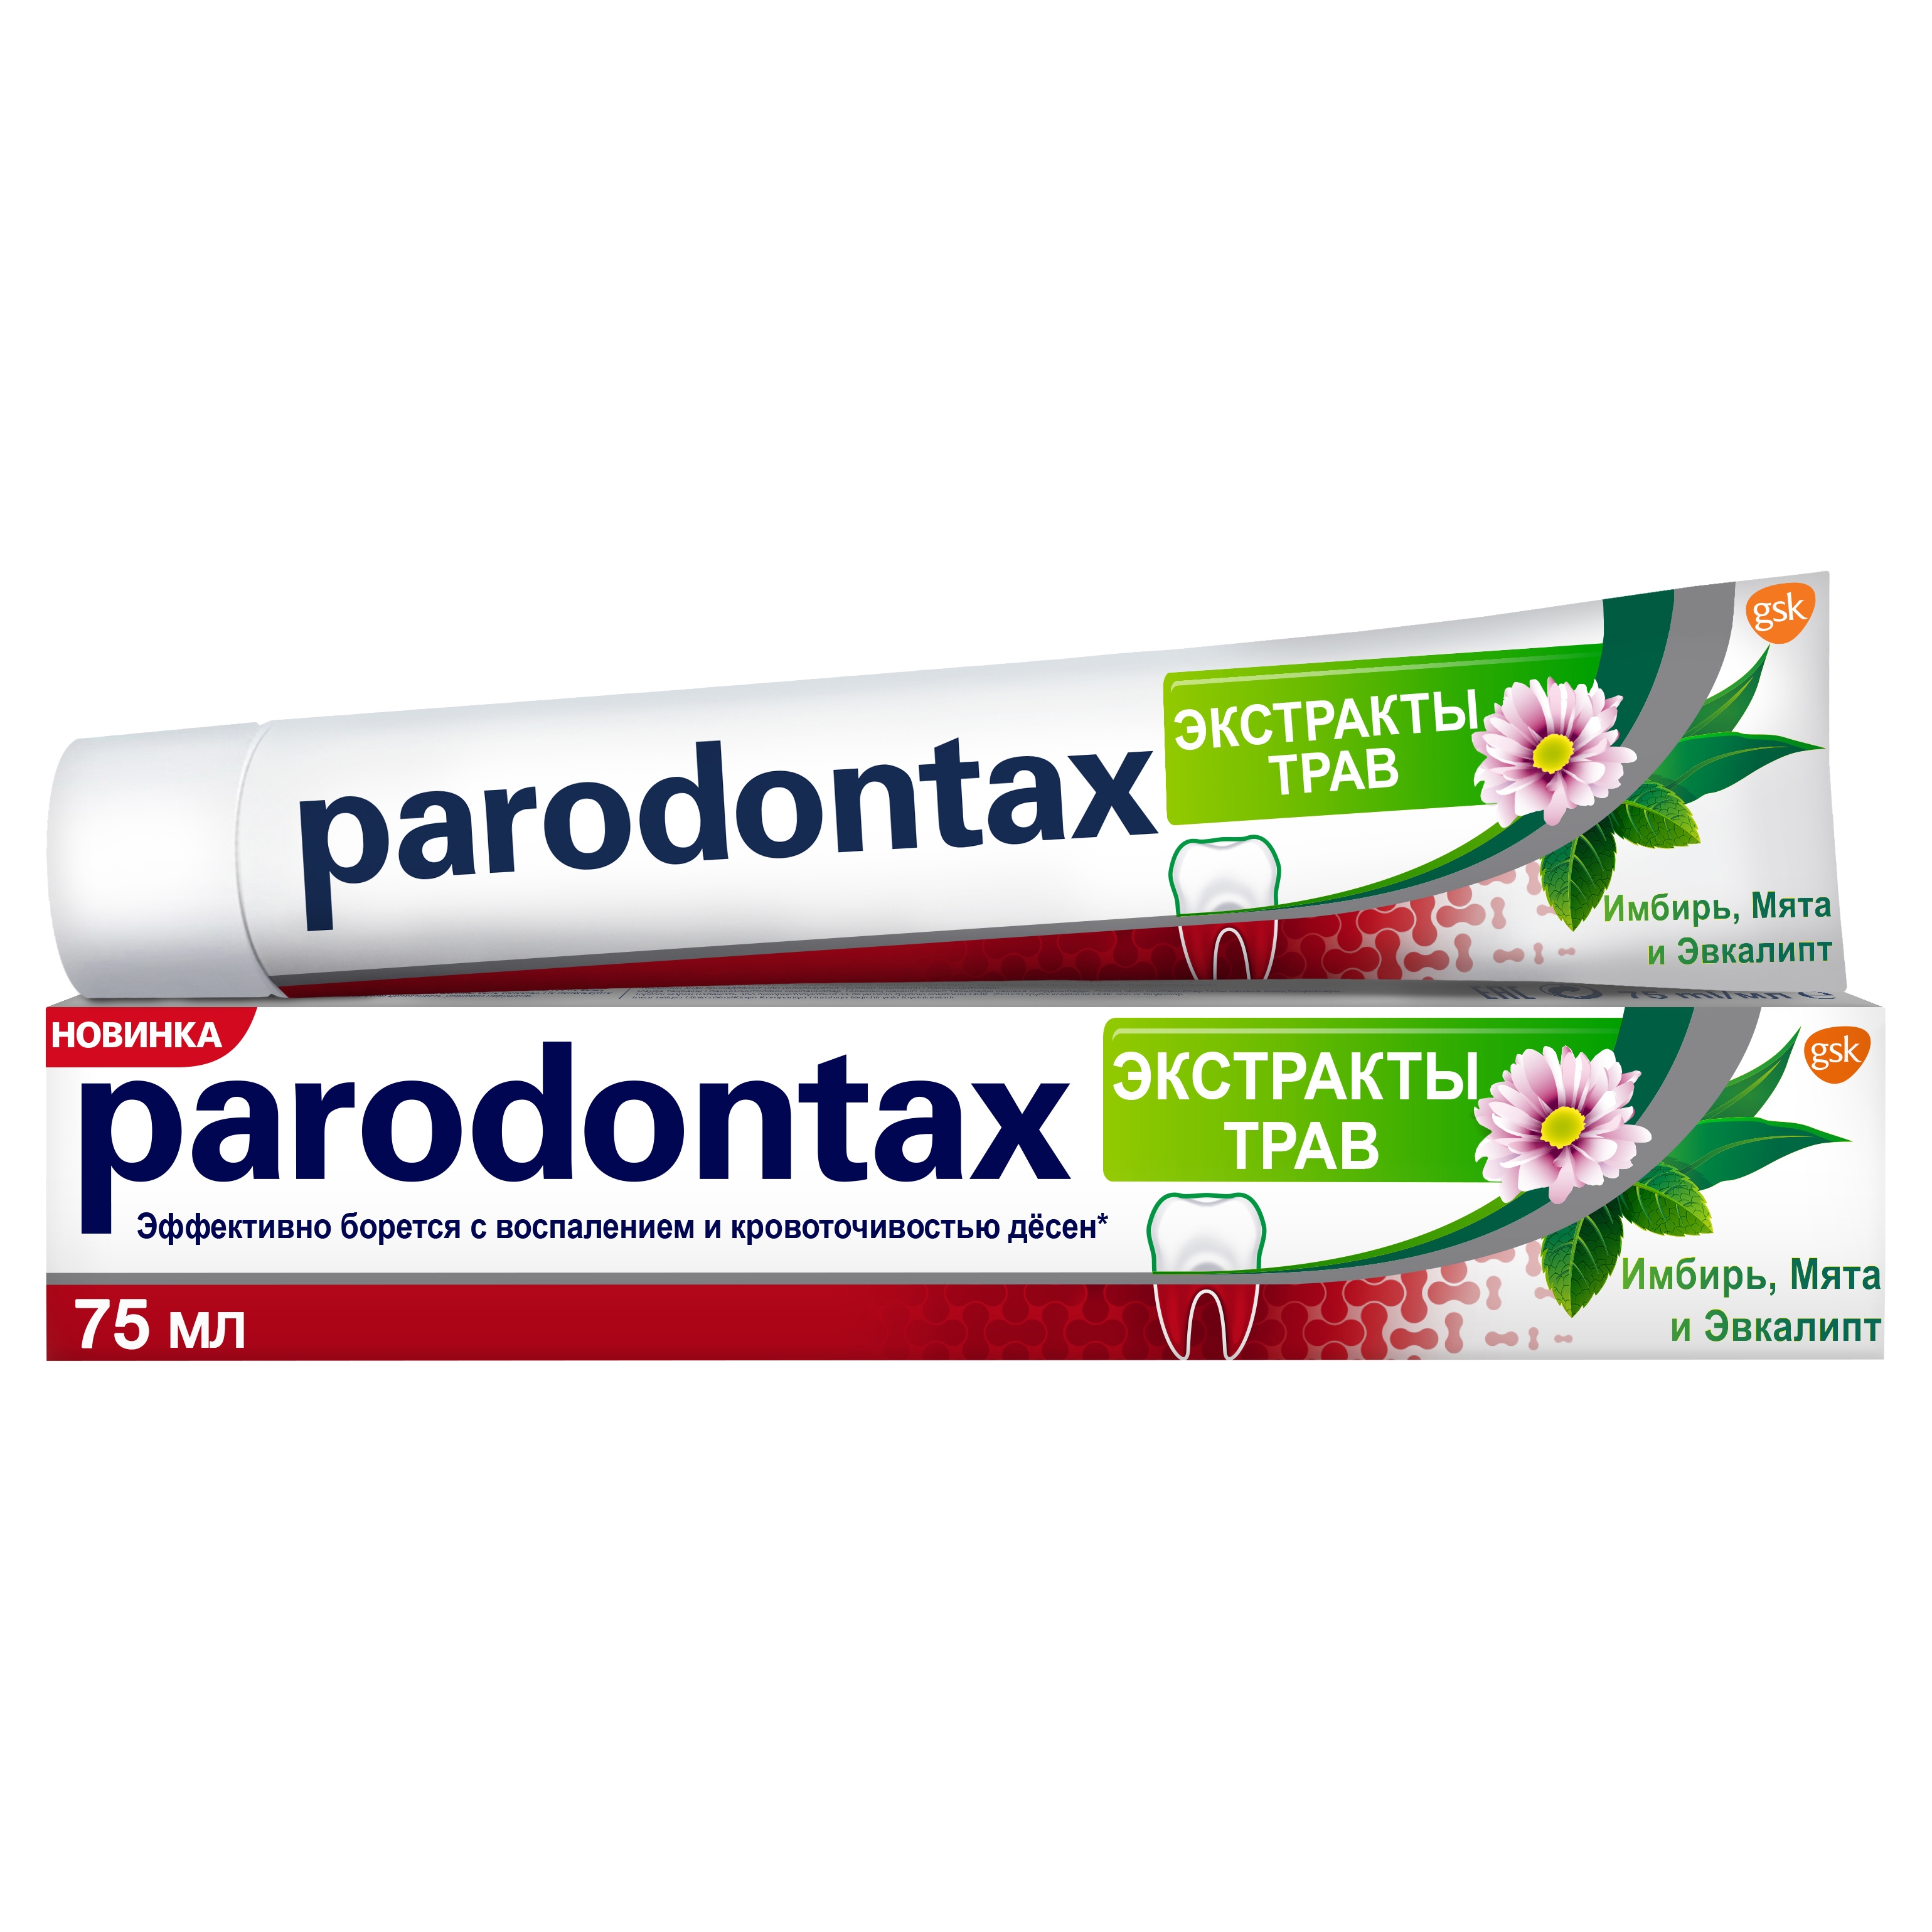 Зубная паста Parodontax Экстракты Трав 75 мл зубная паста parodontax без фтора зубная паста 50 мл